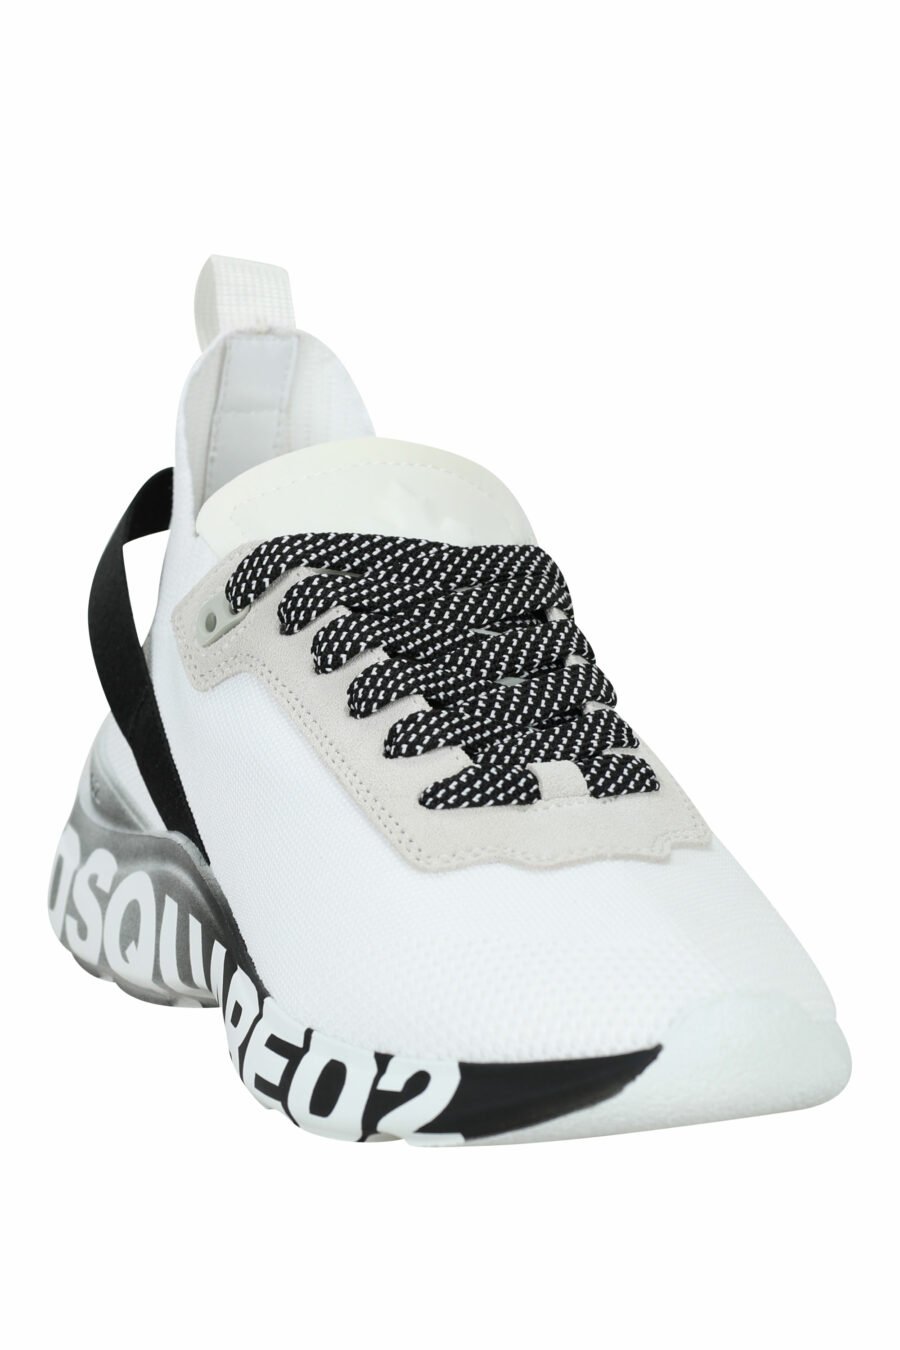 Zapatillas blancas "fly" con suela negra degradé y logo - 8055777324875 1